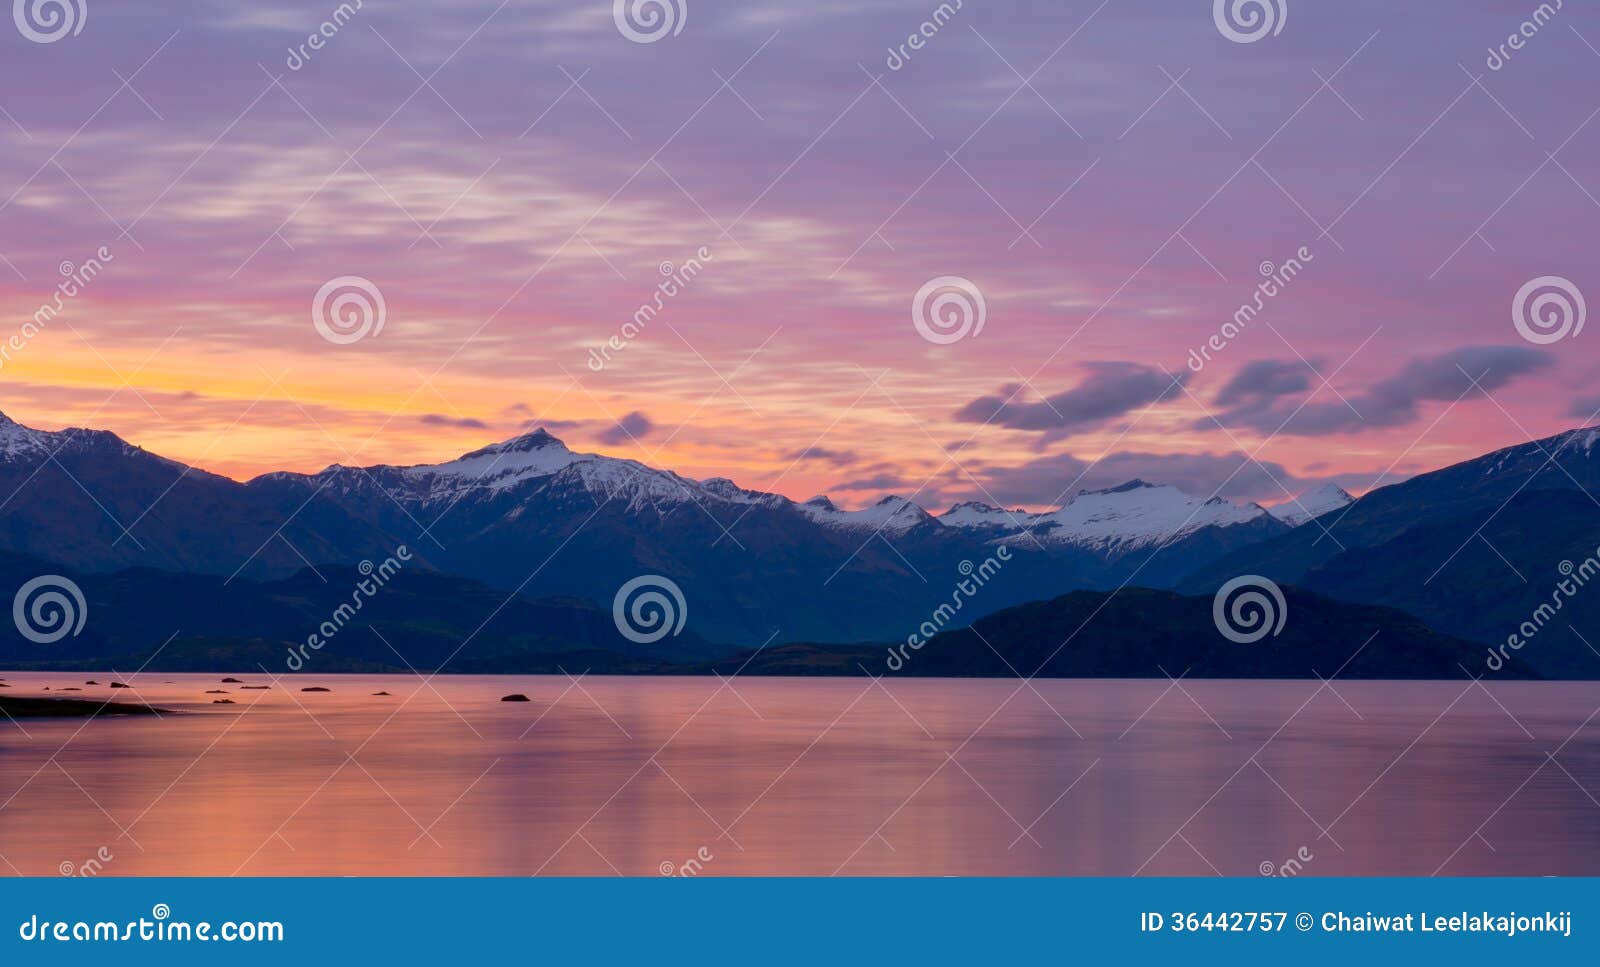 Beau paysage Nouvelle-Zélande. Beau coucher du soleil de paysage d'île du sud de lac Wanaka, Nouvelle-Zélande.